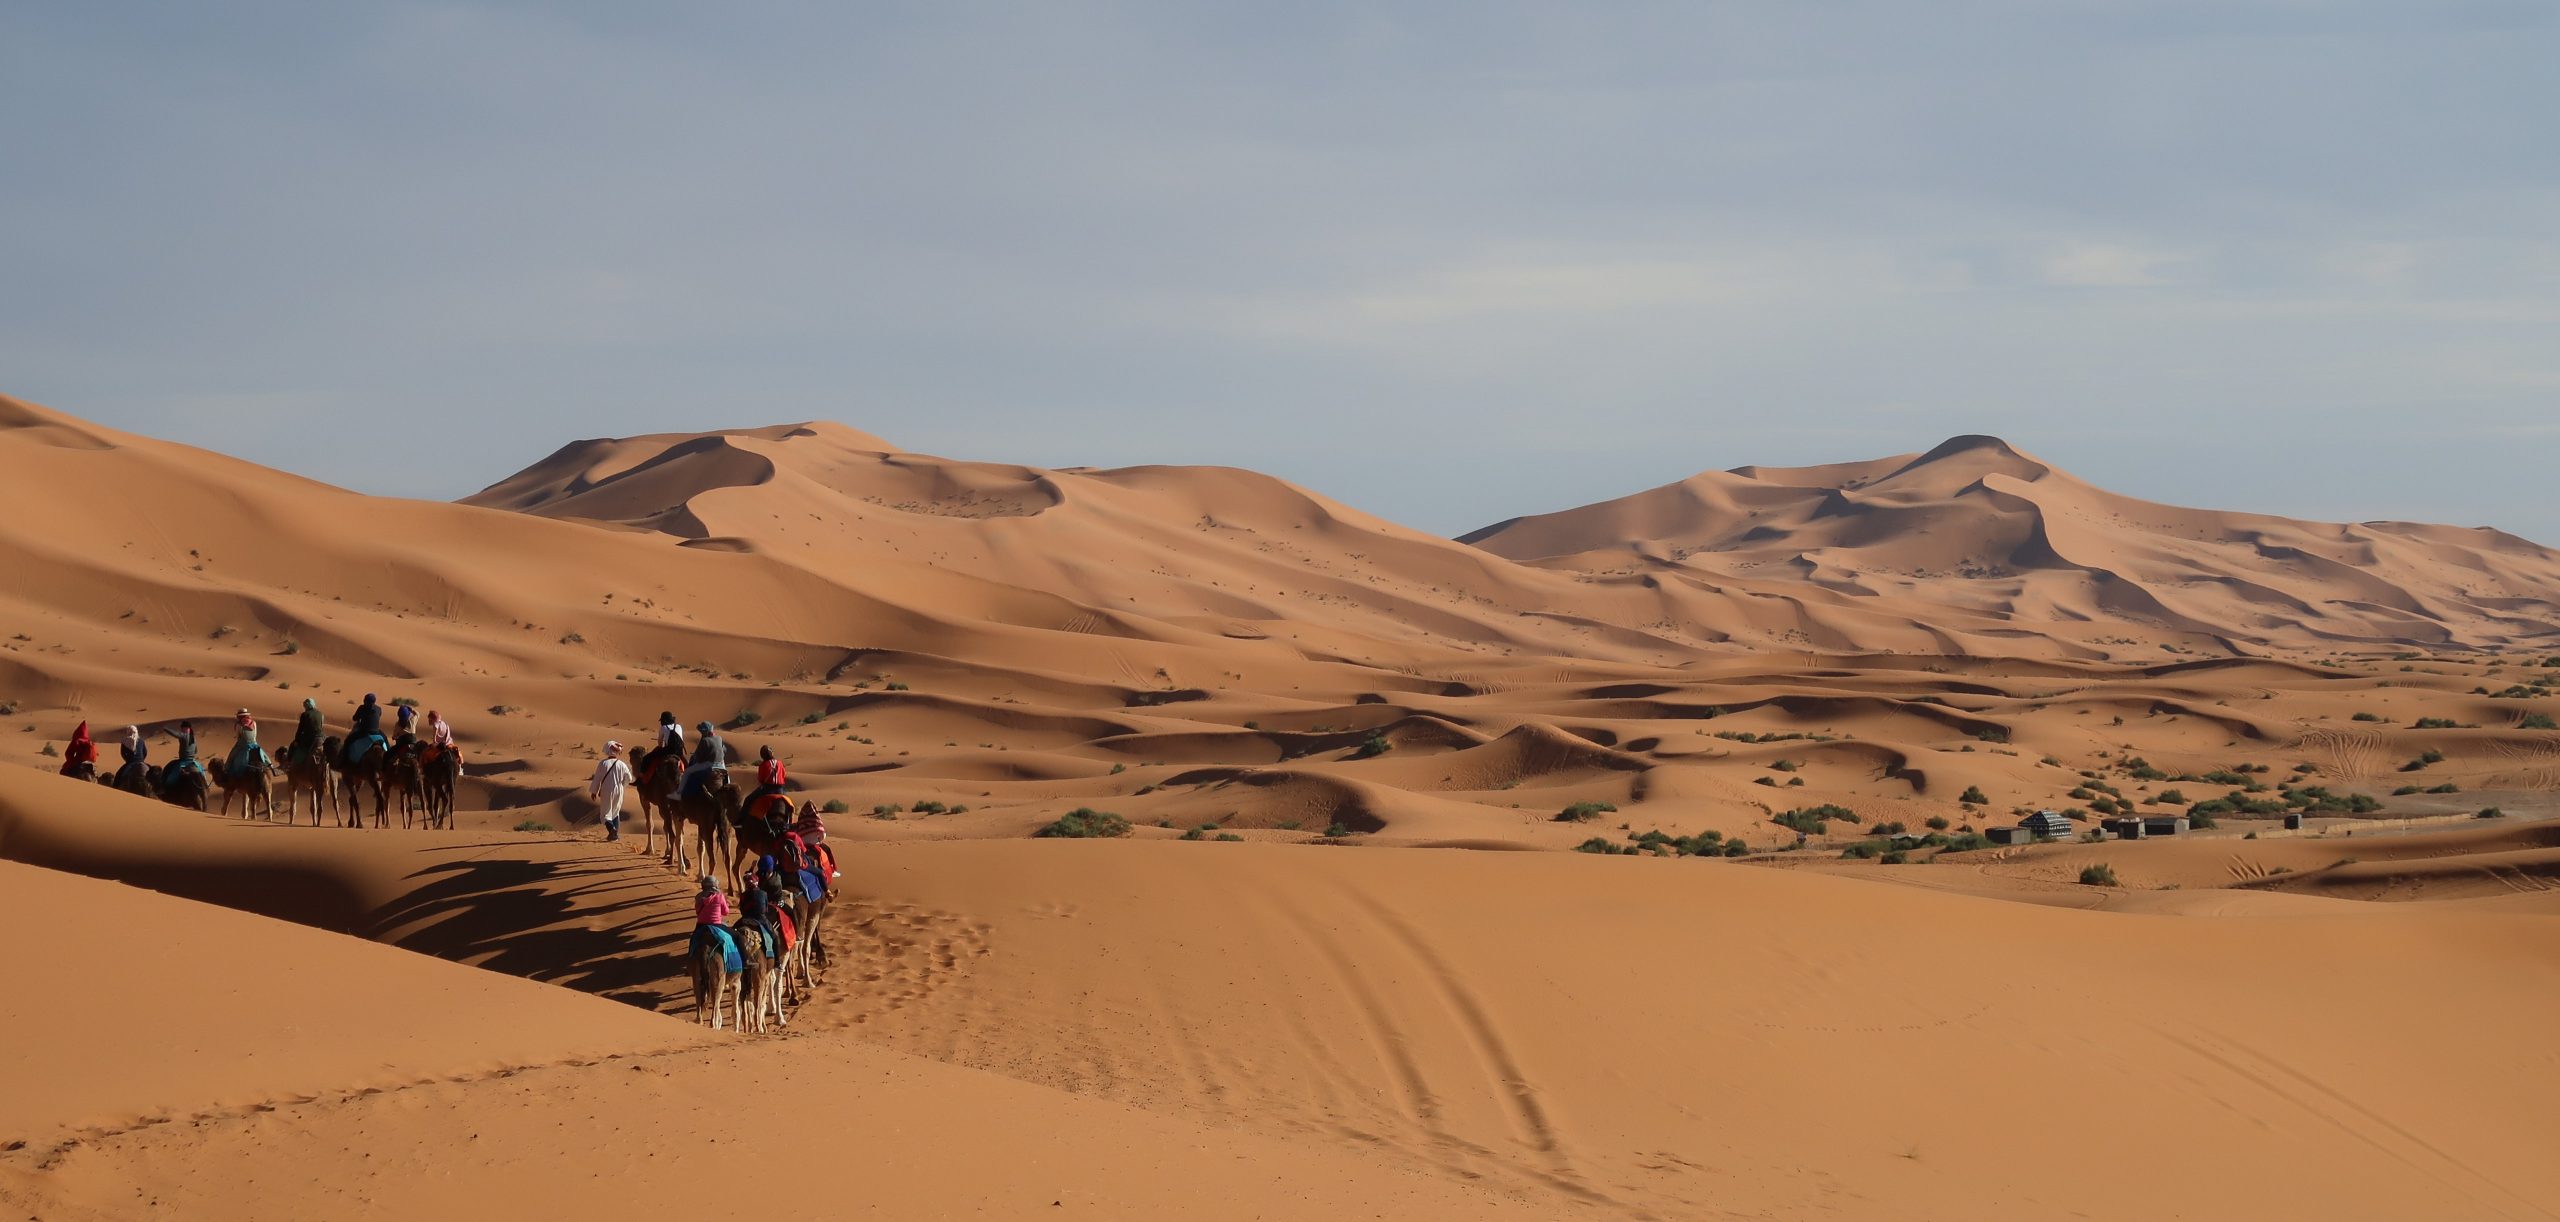 travel agency Marrakech Desert Morocco,3 days from marrakech to desert